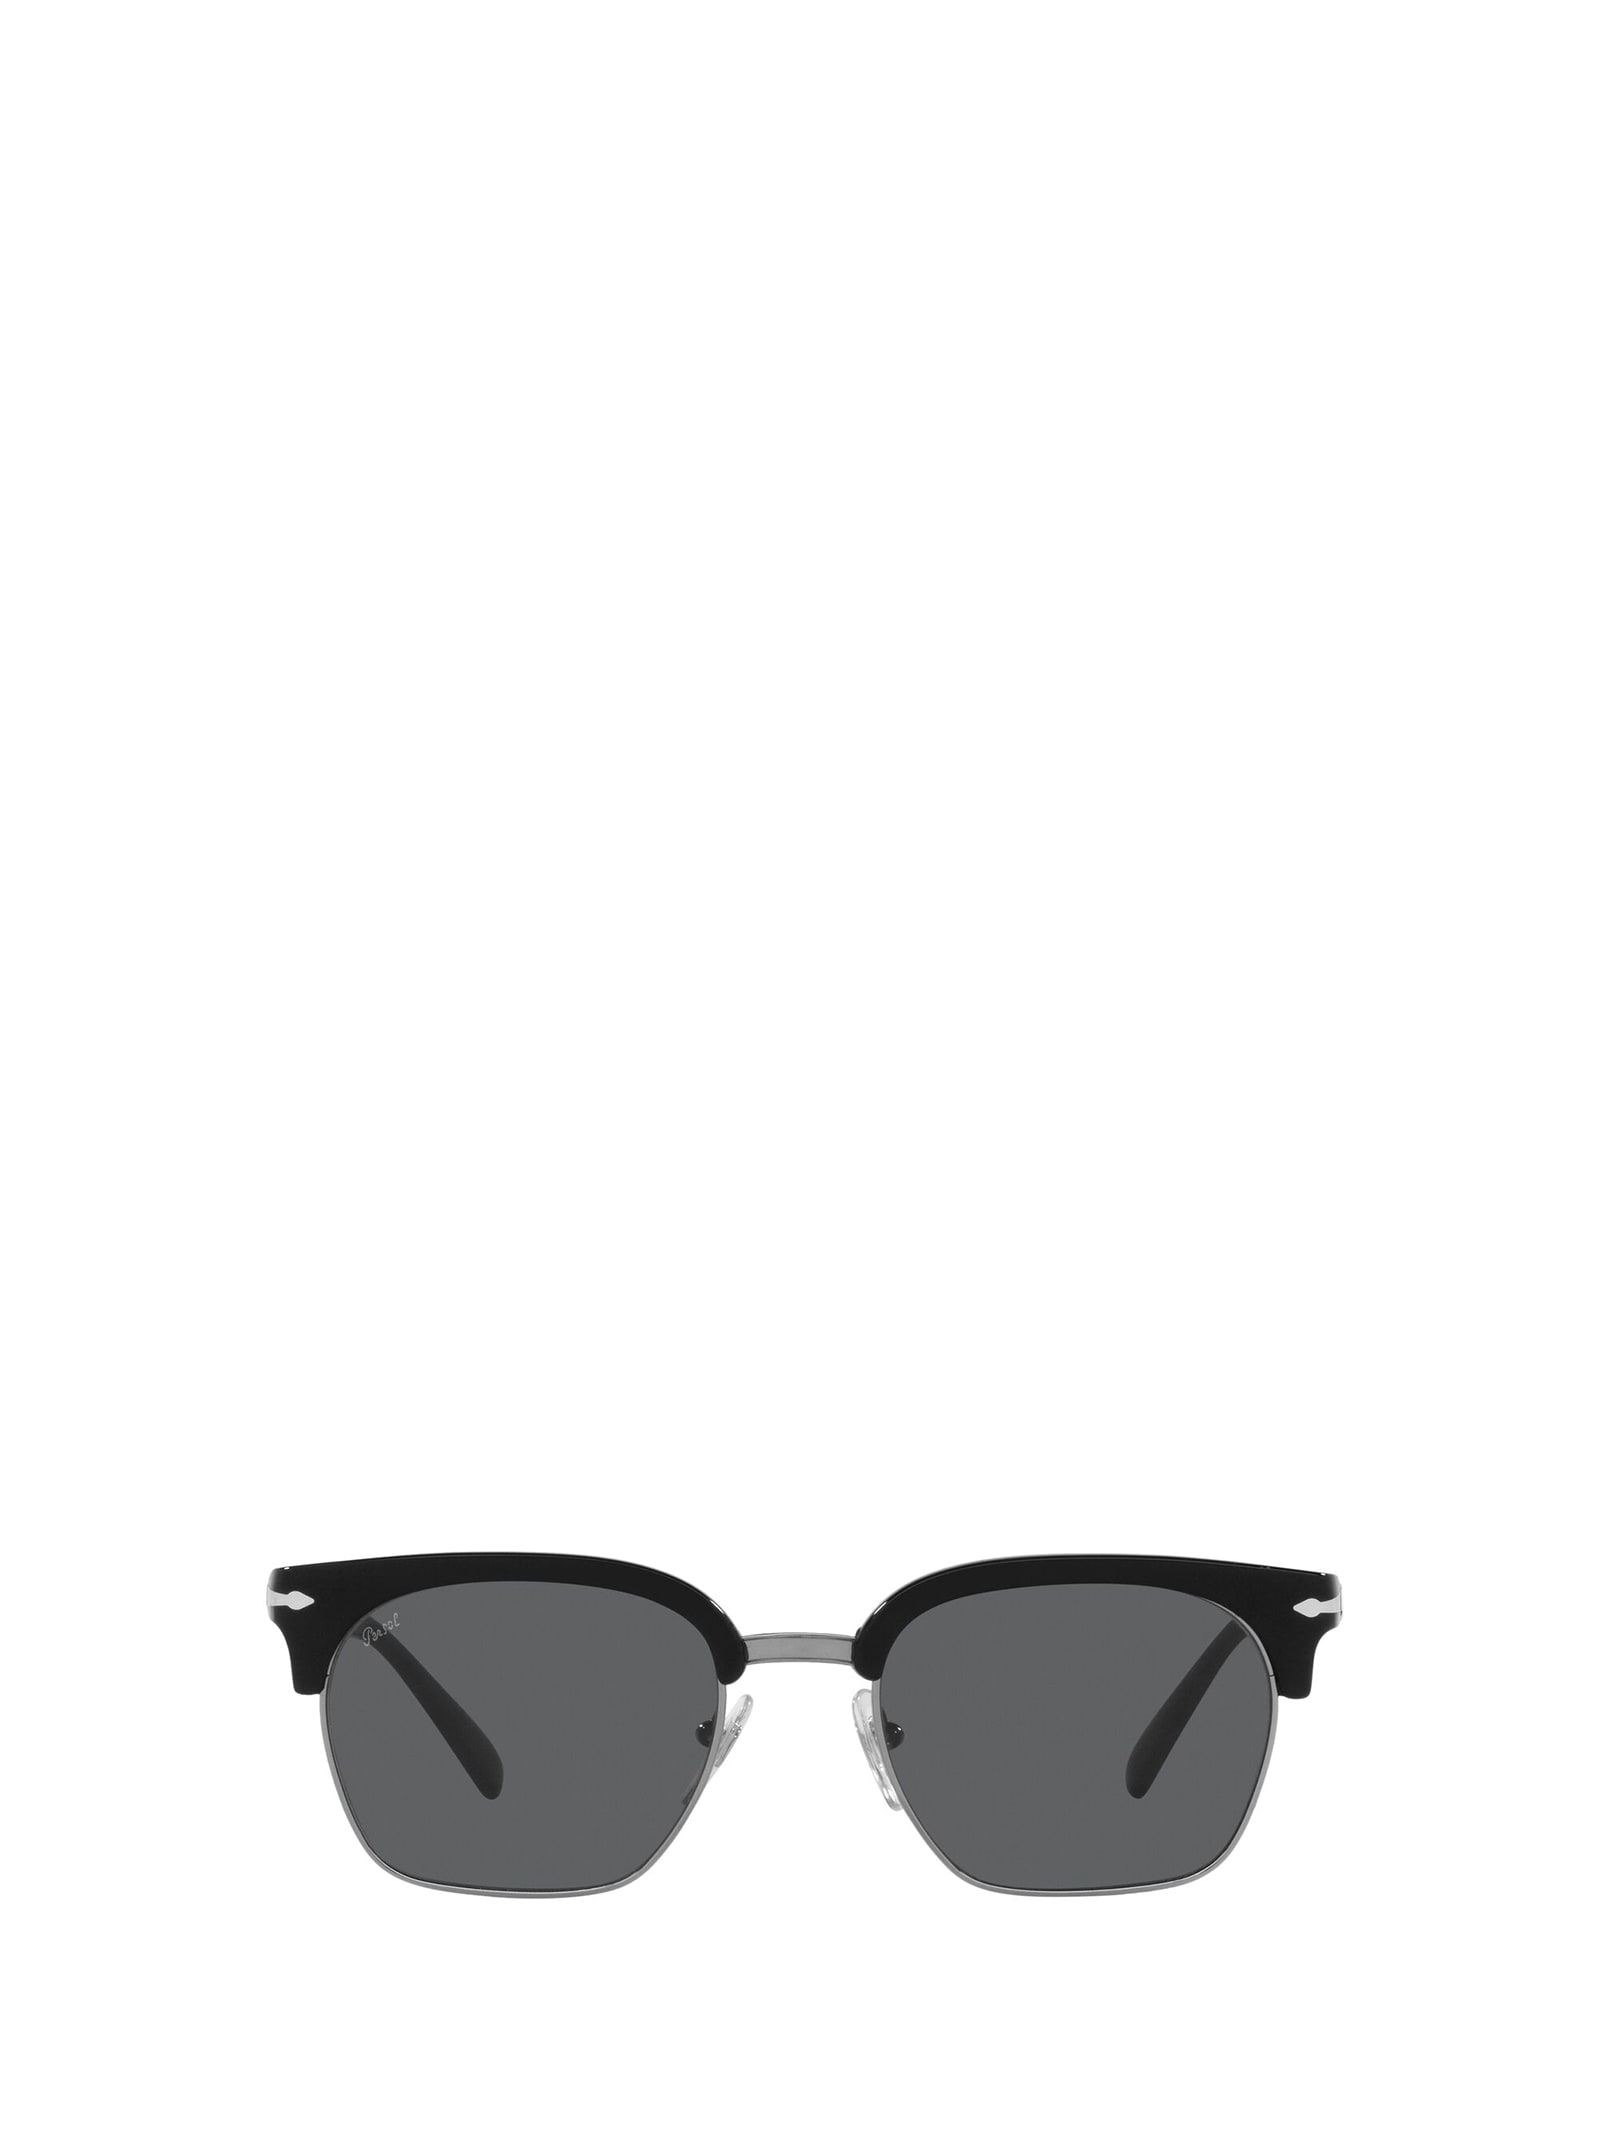 Persol Persol Po3199s Black / Gold Sunglasses